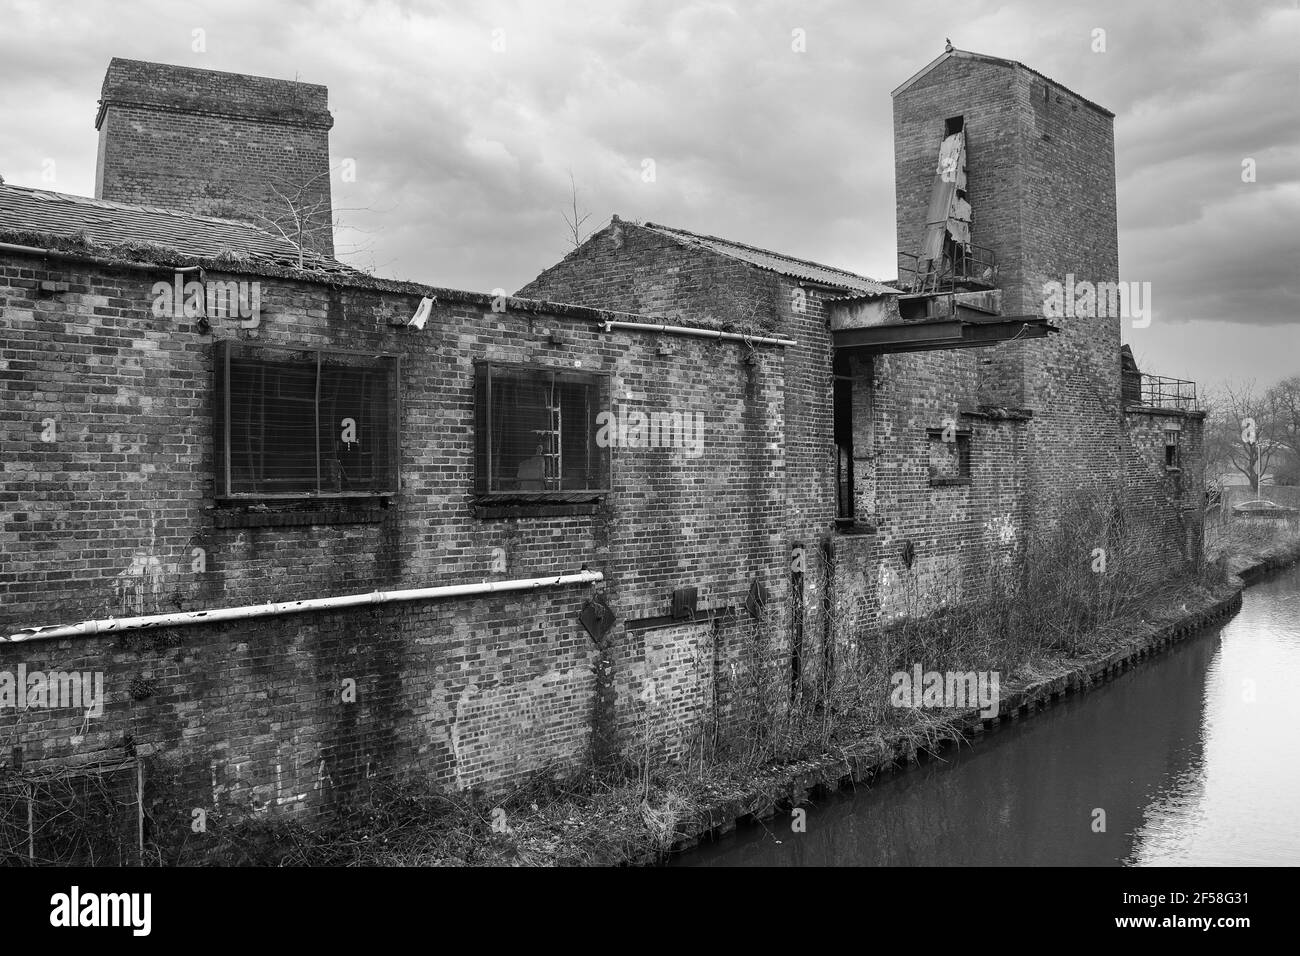 Photographie en noir et blanc montrant la désintégration urbaine. Un vieux bâtiment négligé abandonné par le côté d'un canal Banque D'Images